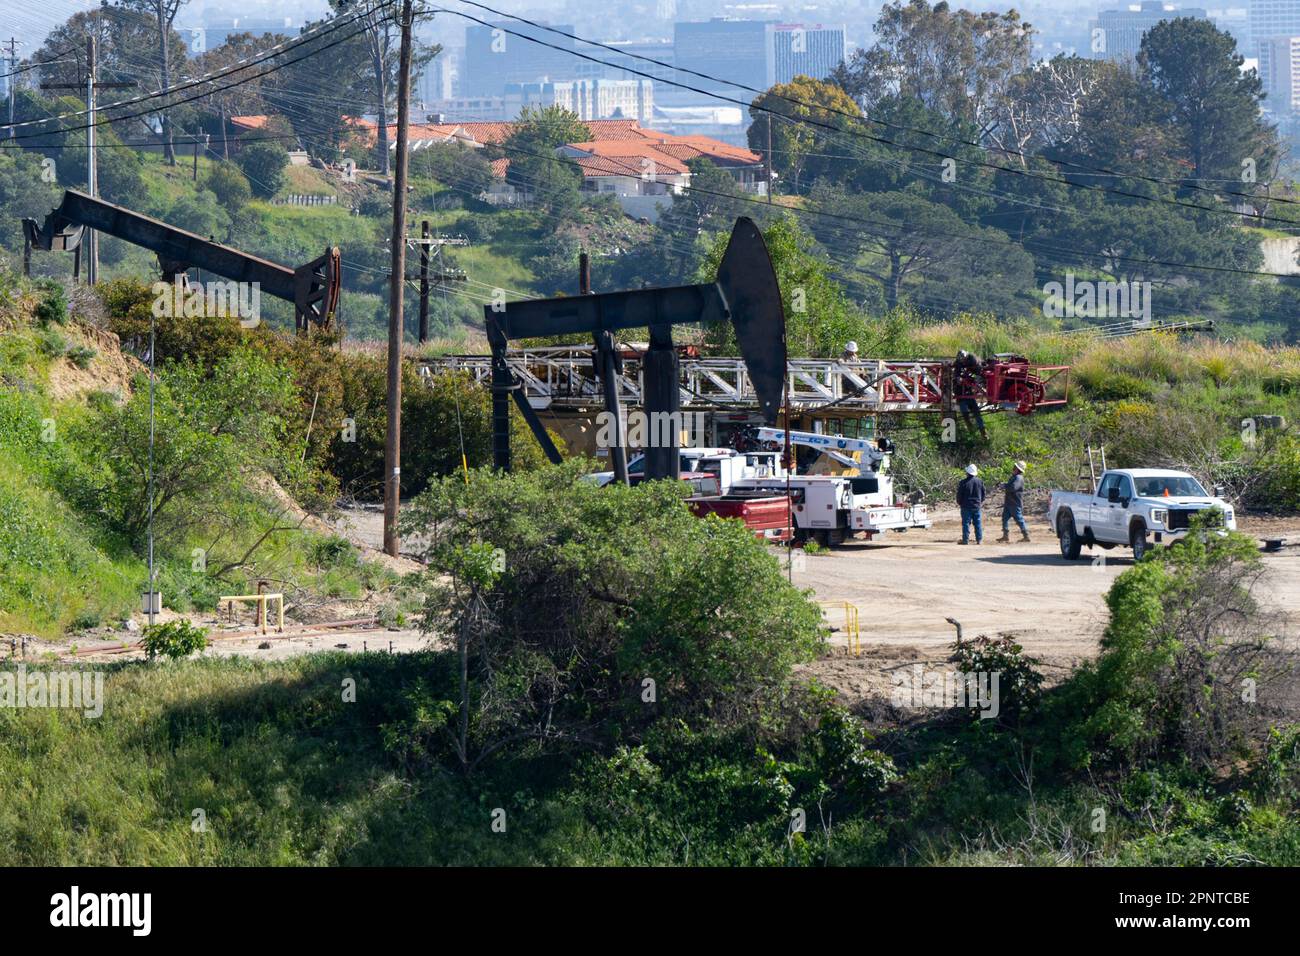 LA: The Biggest Urban Oil Field in the World?